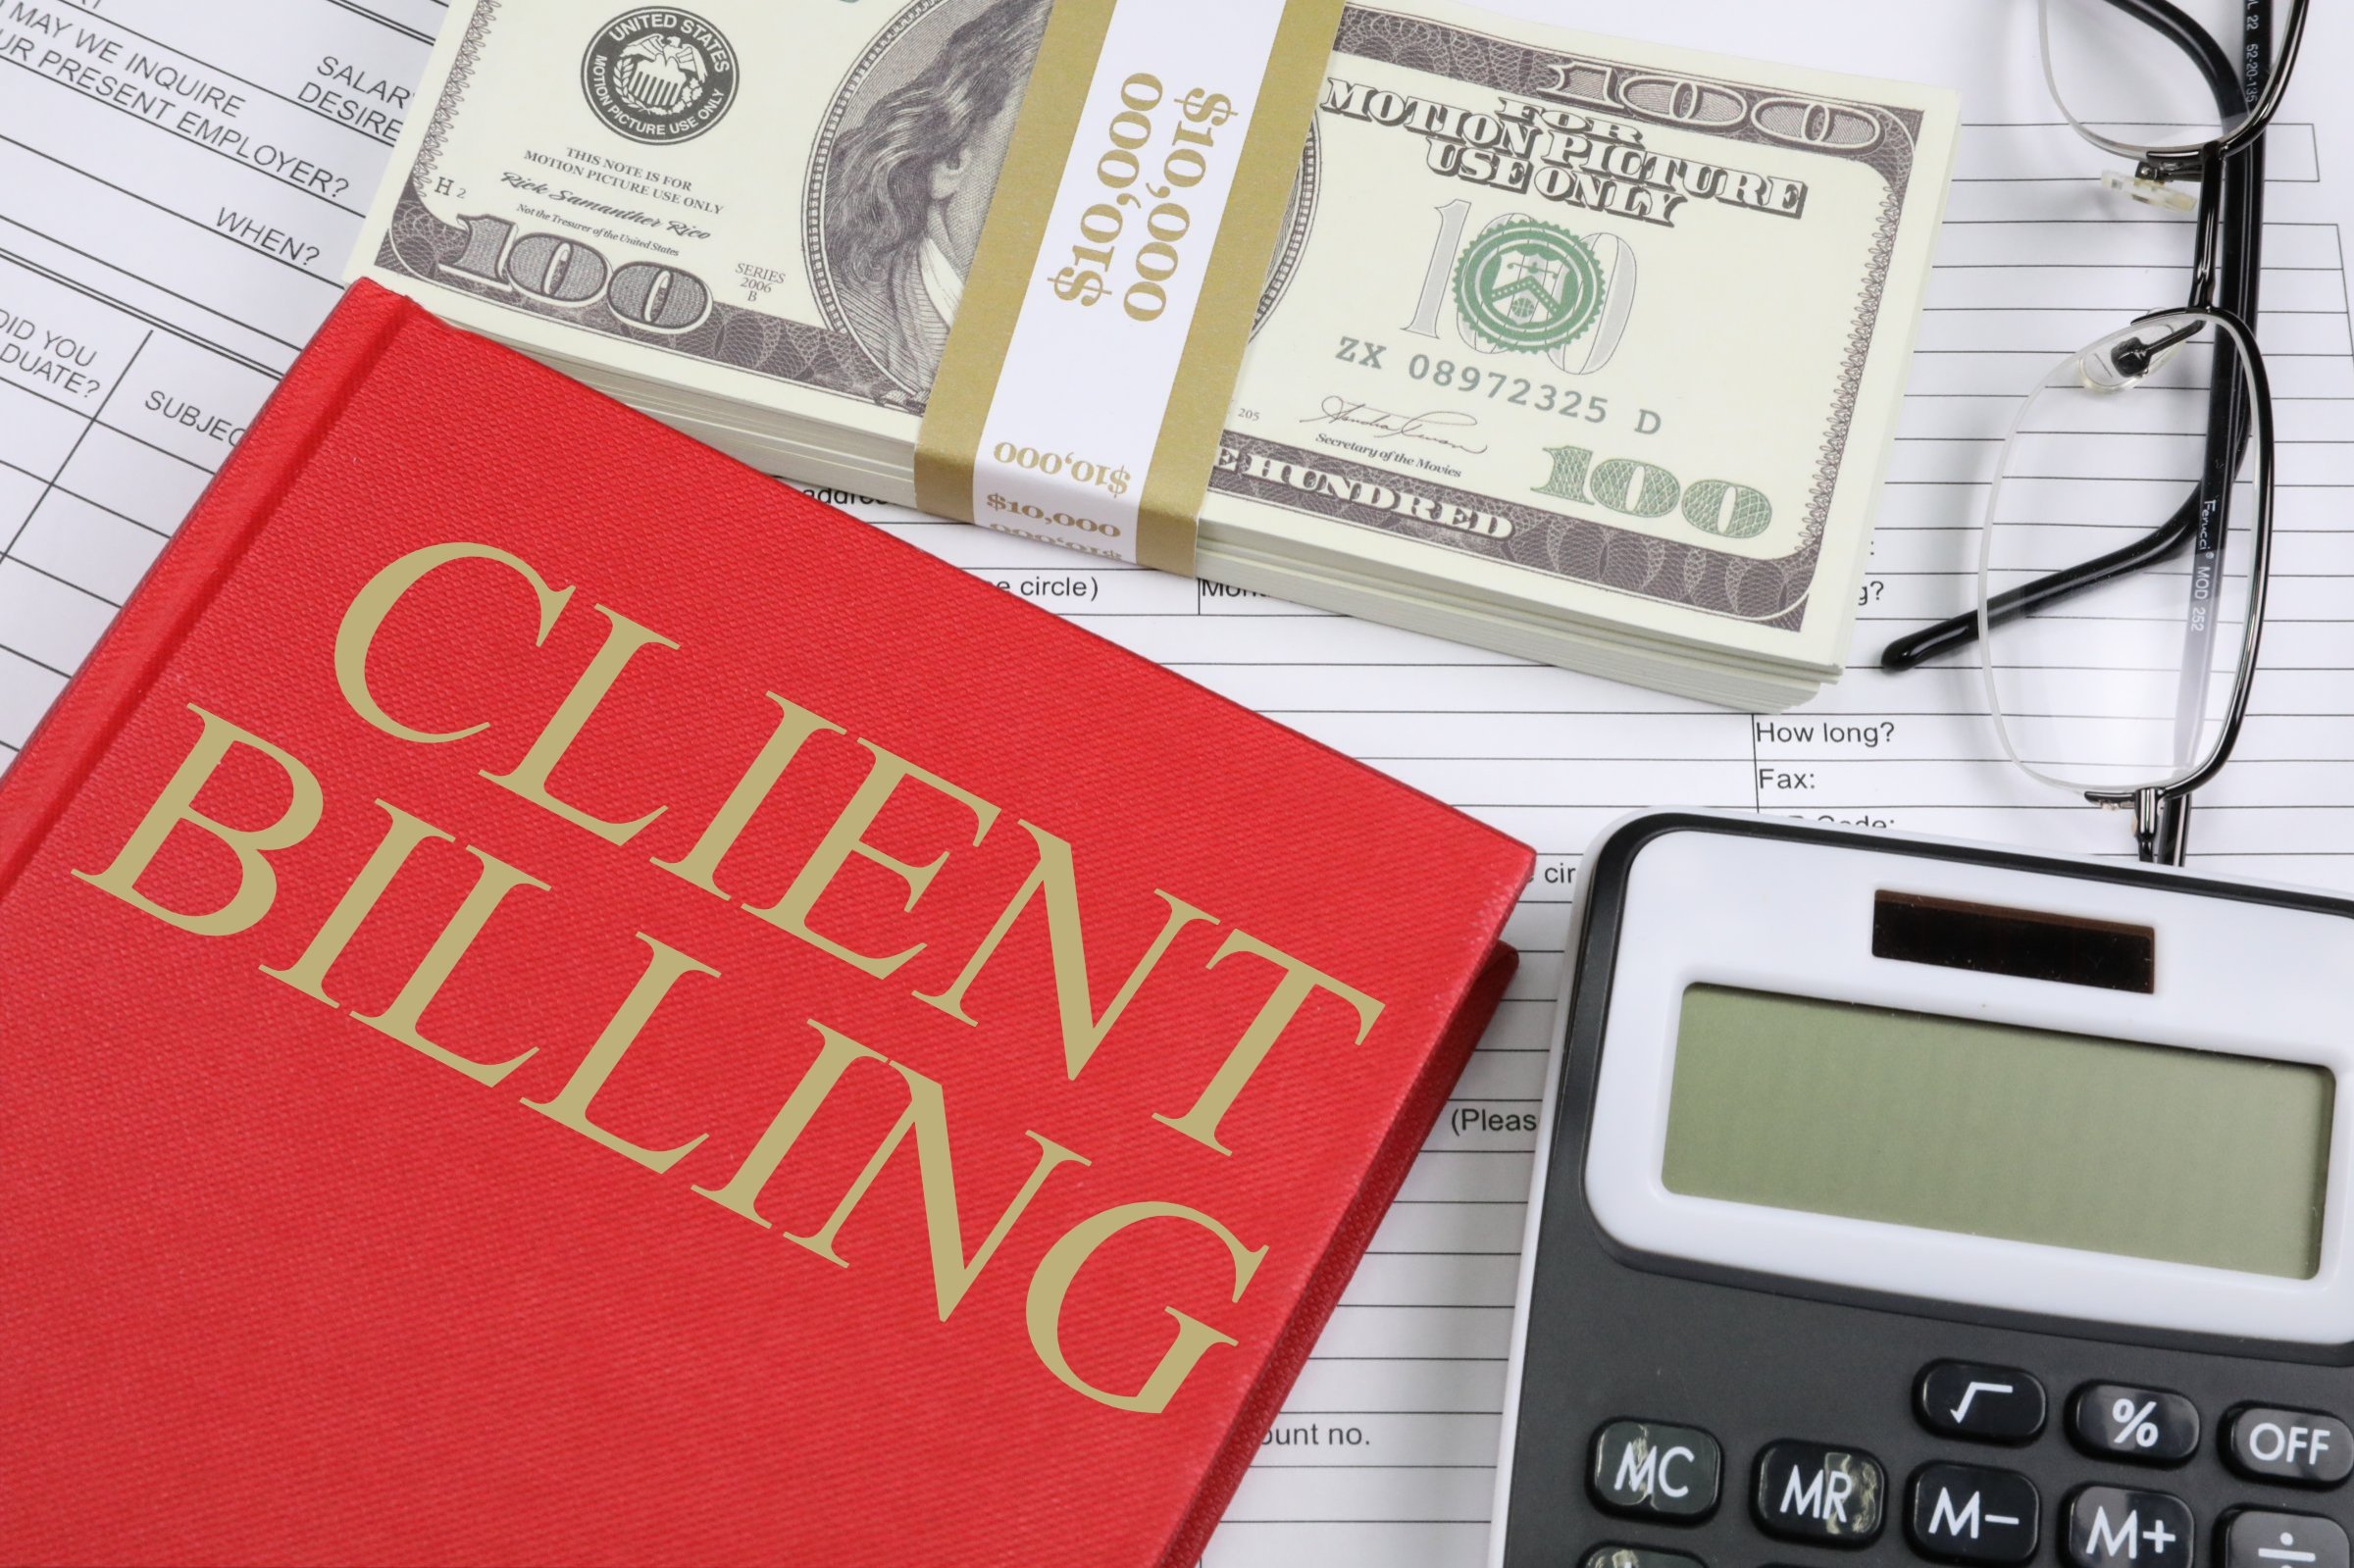 client billing